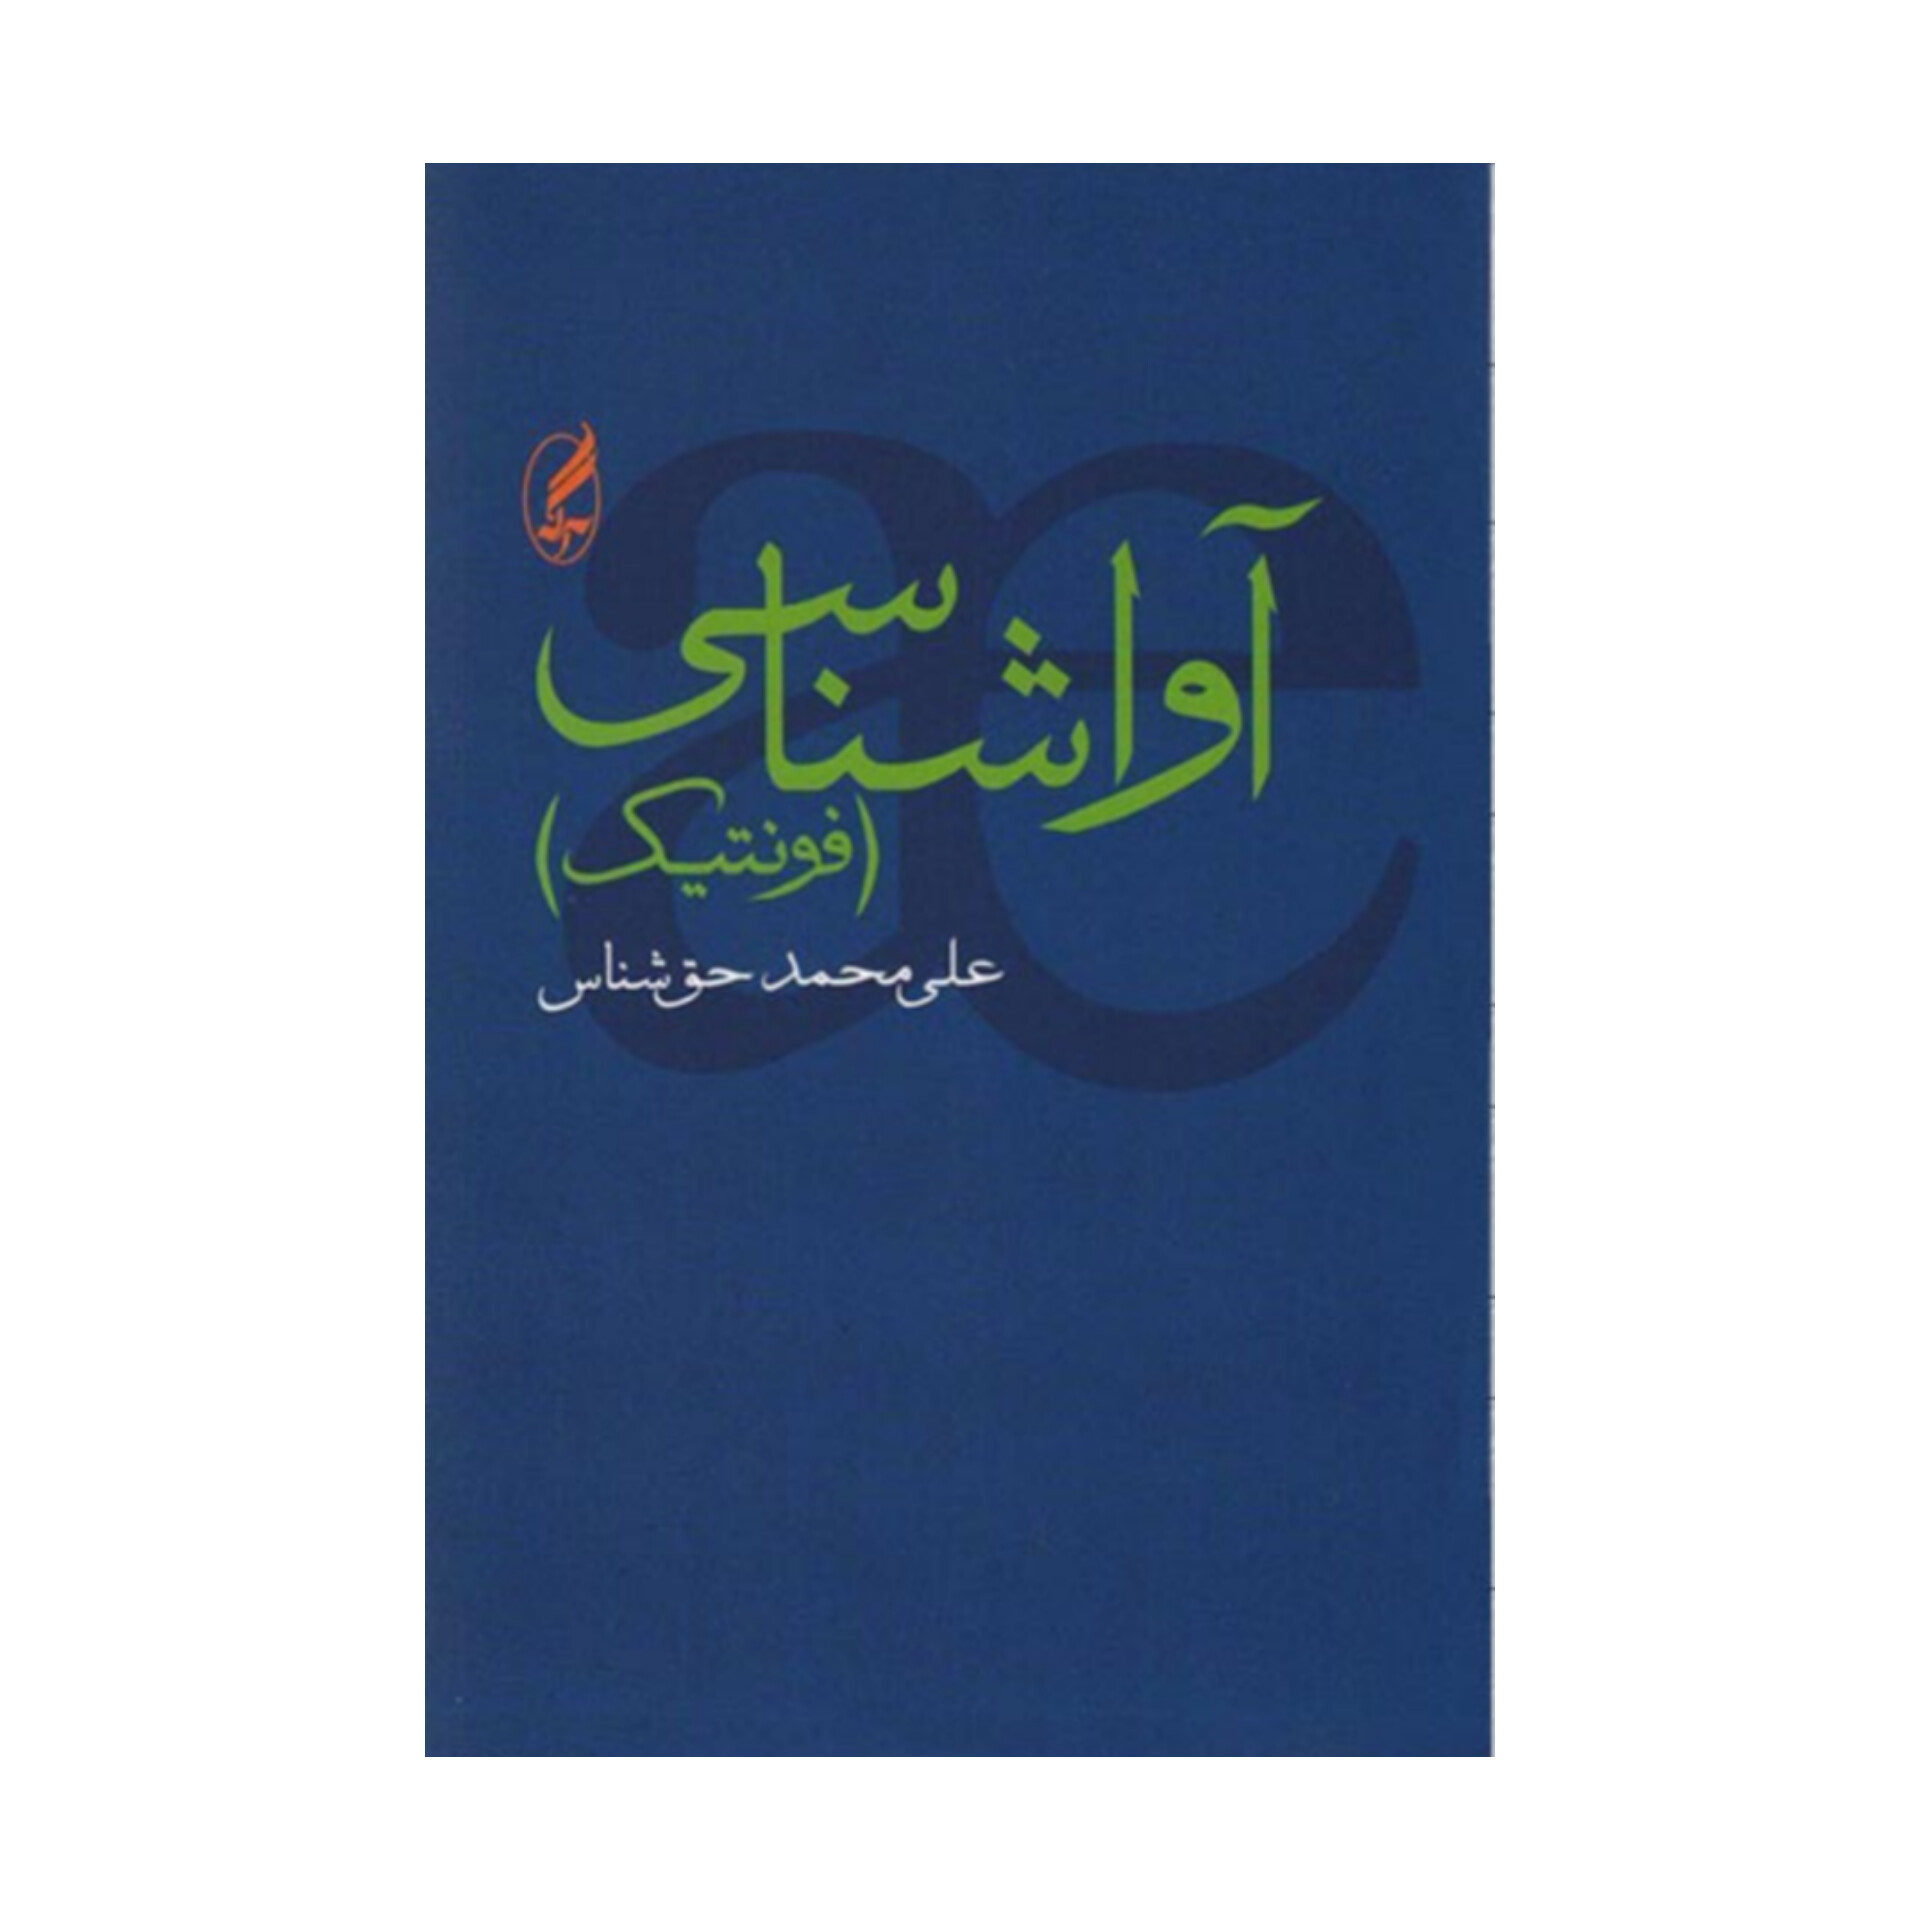 کتاب آواشناسی (فونتیک)/ علی محمد حق شناس